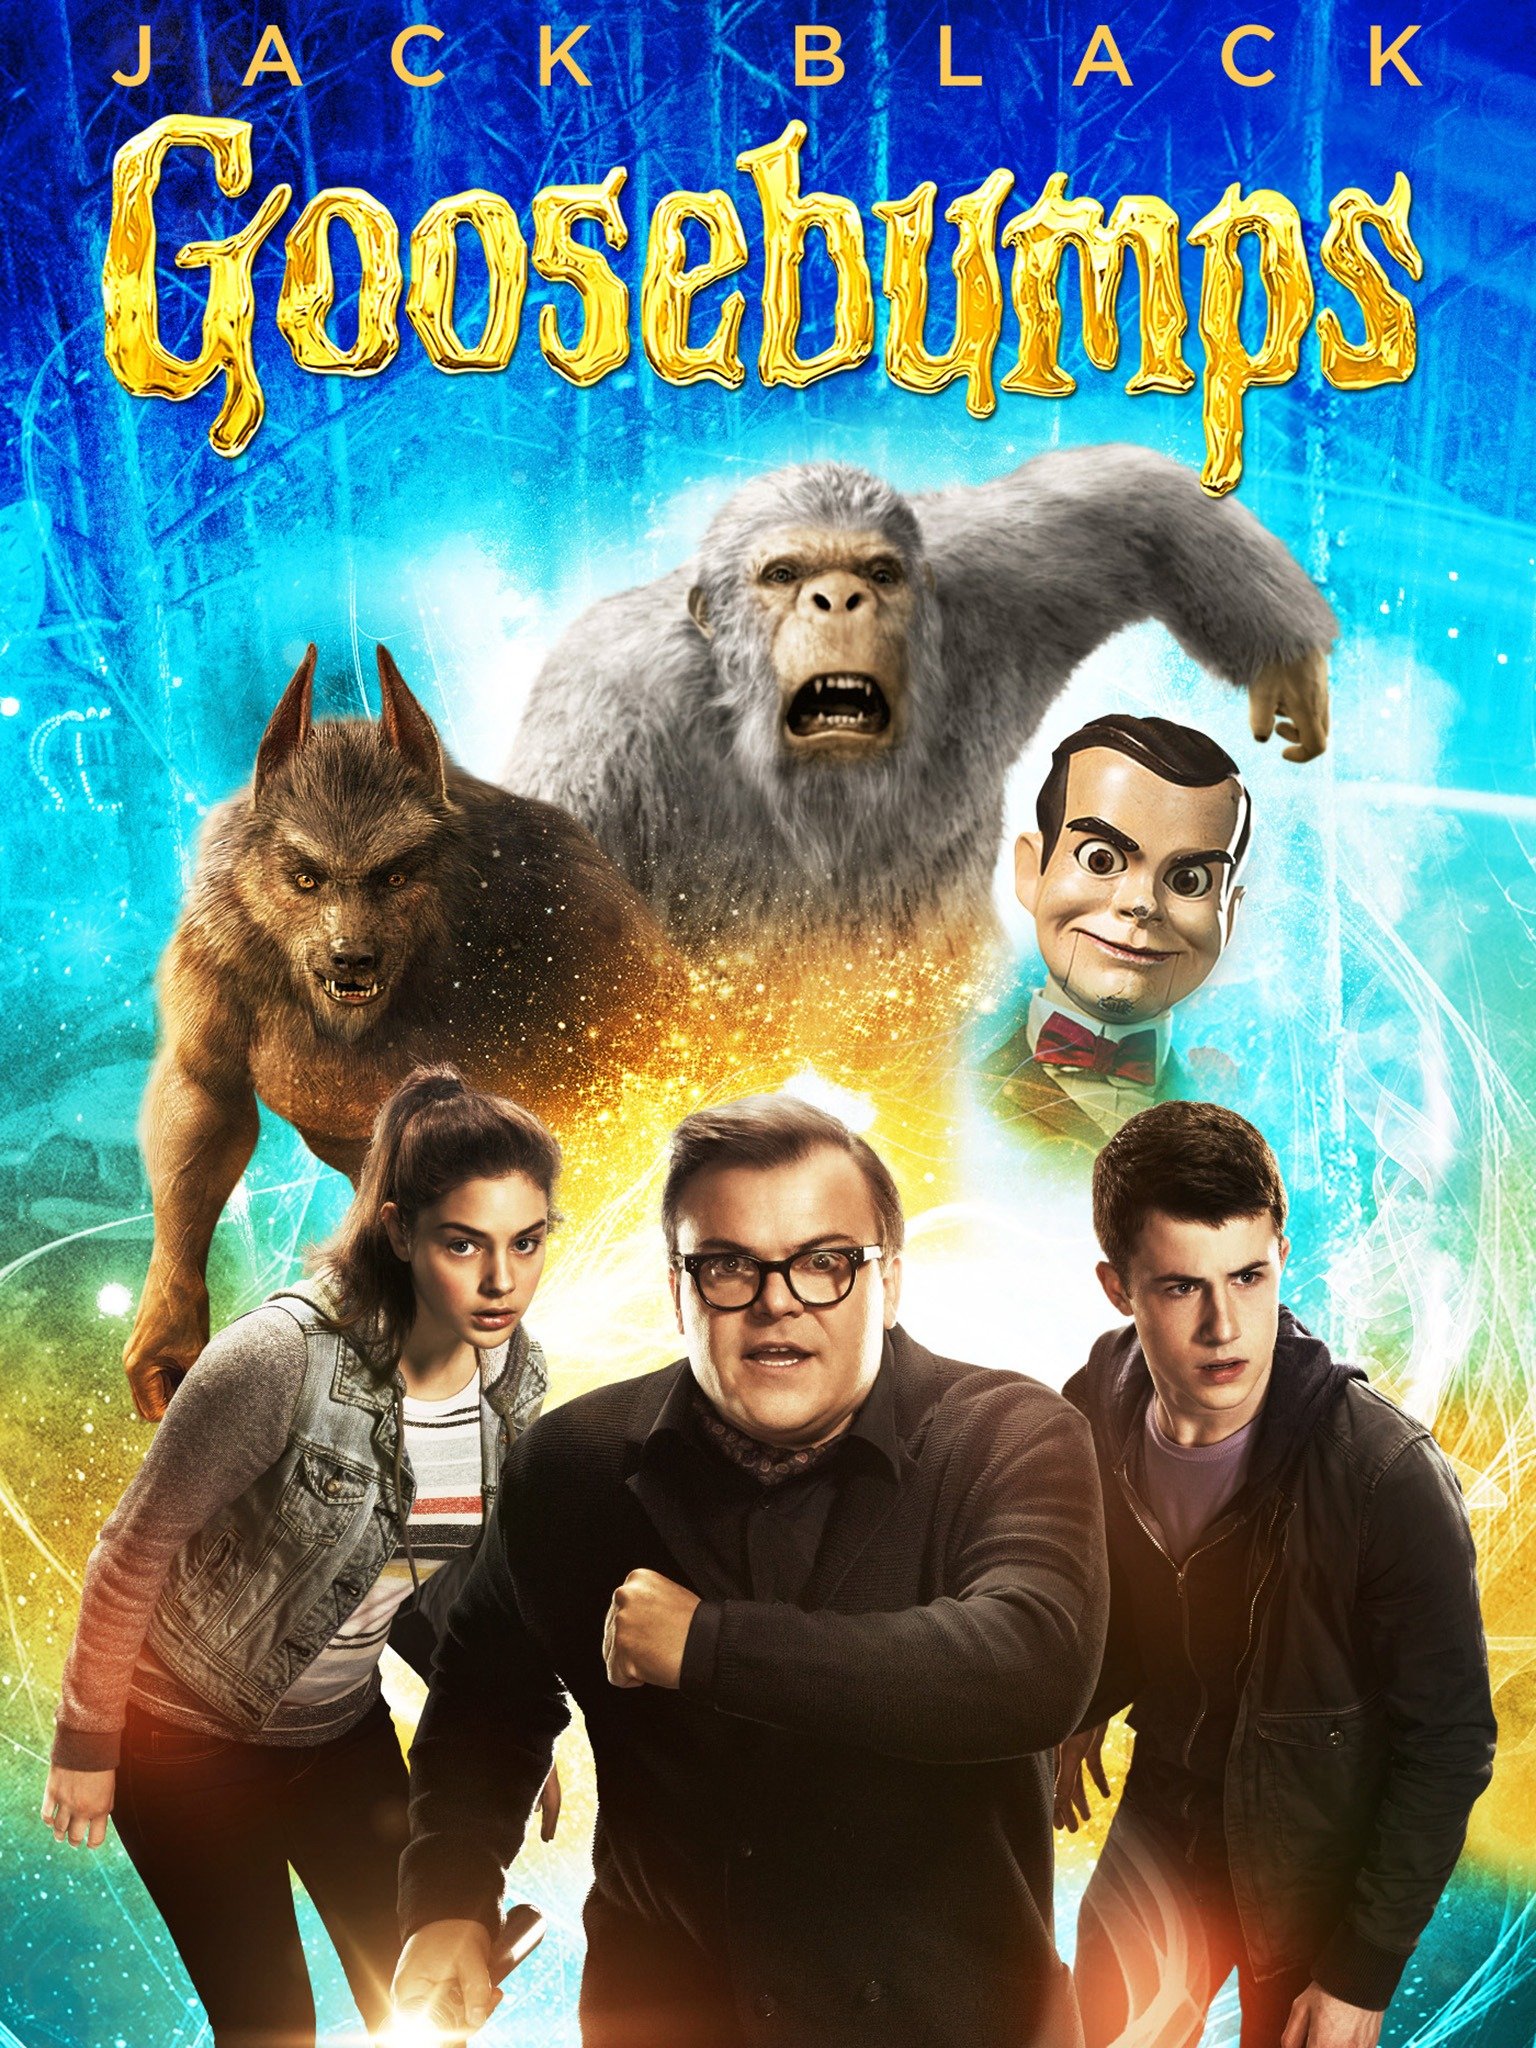 Goosebumps - Movie Reviews